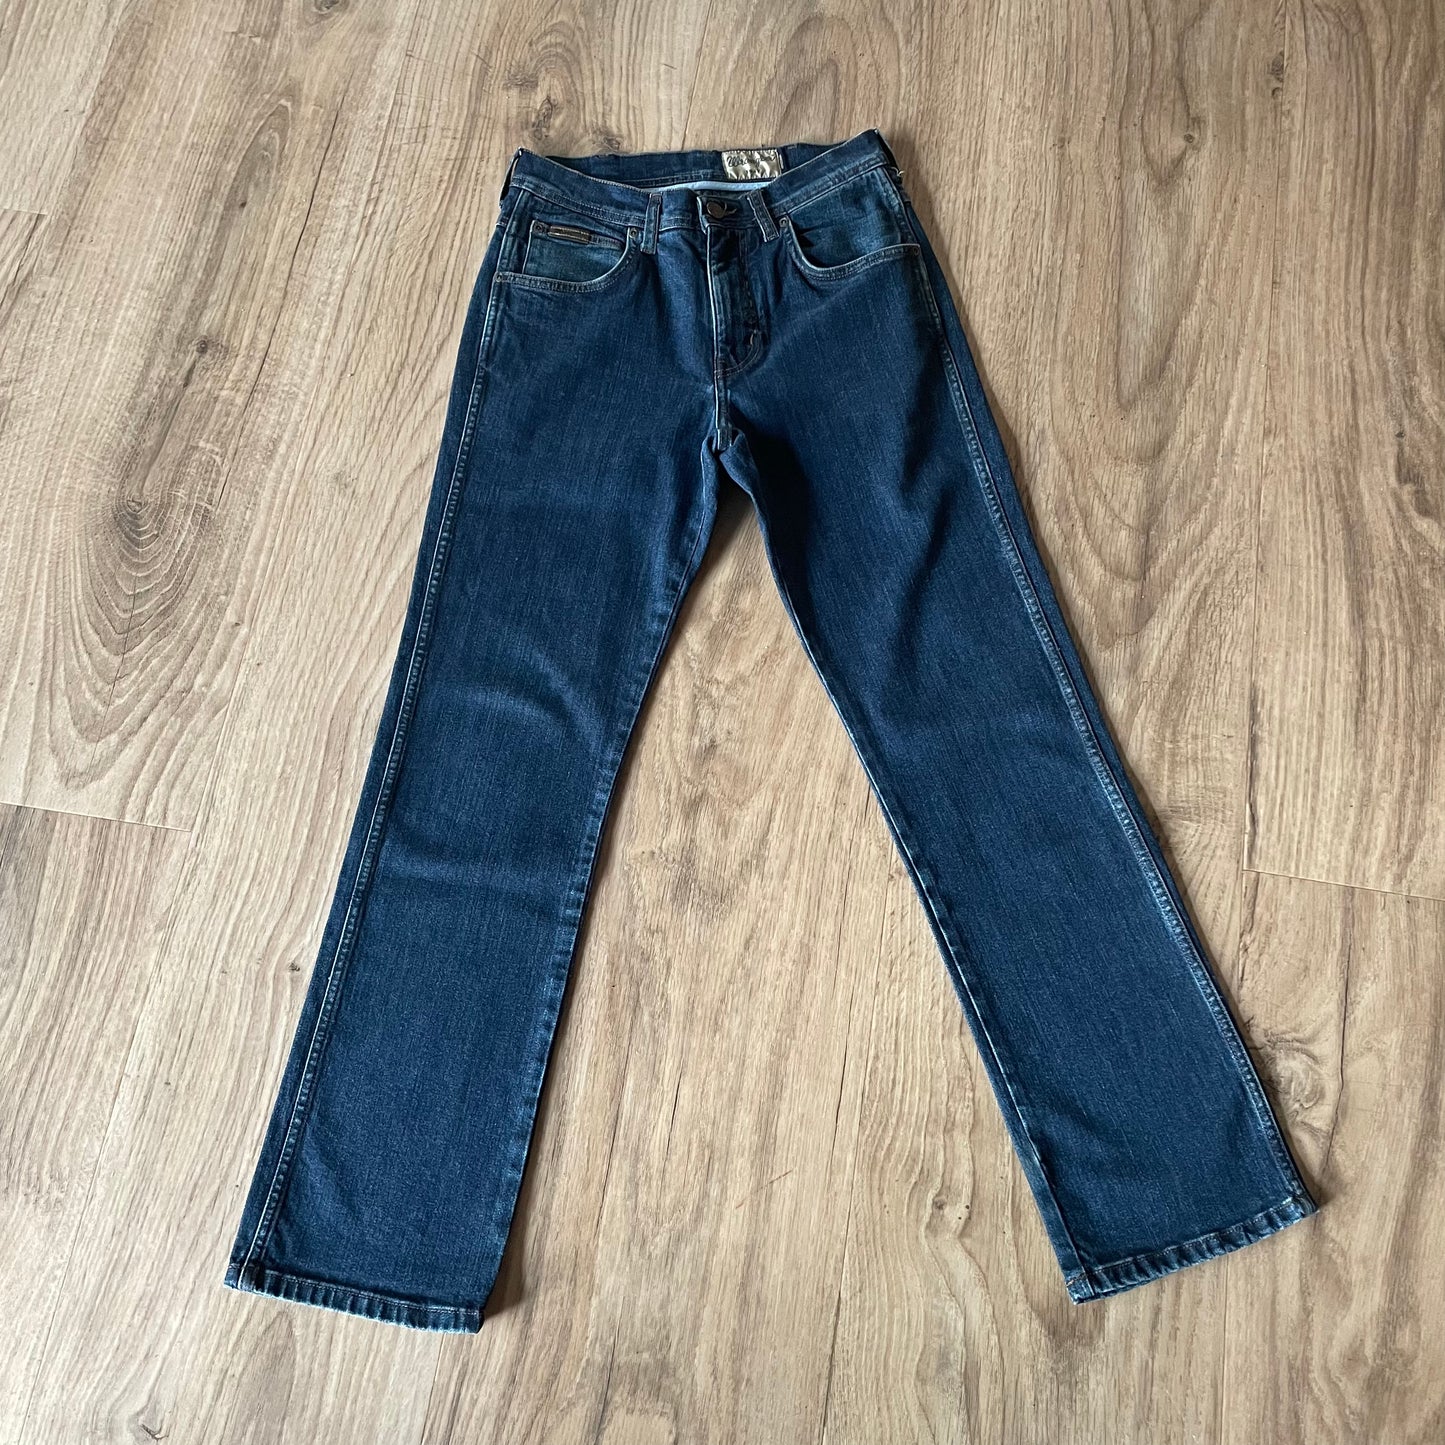 Wrangler 1947 Jeans